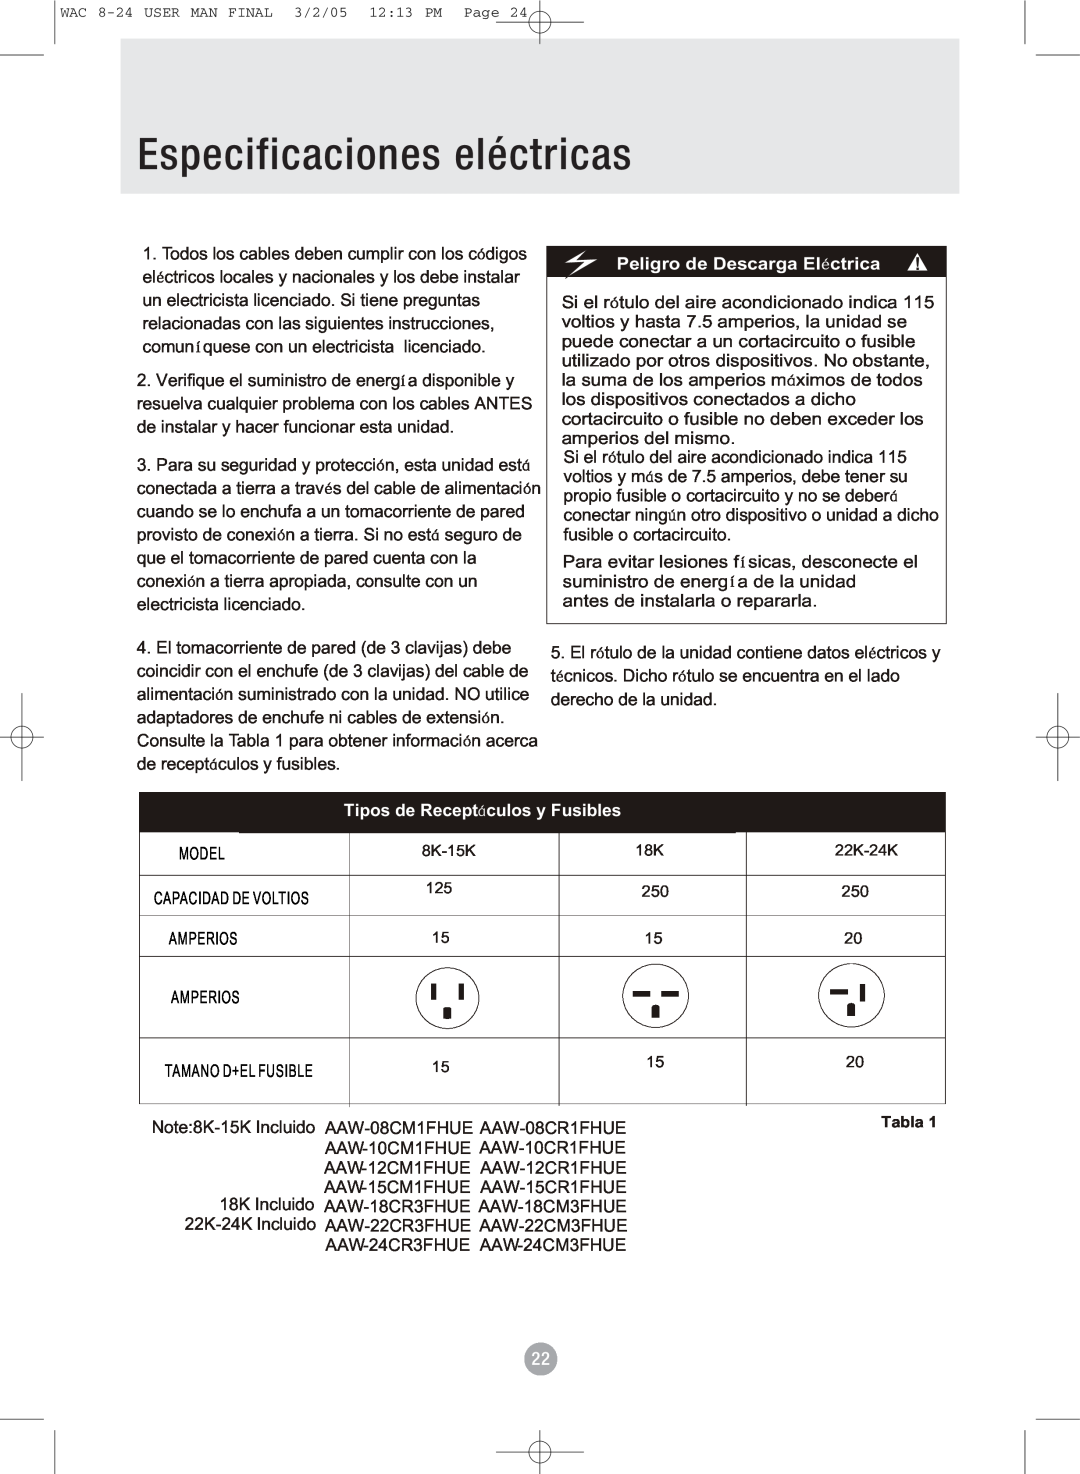 Admiral AAW-12CM1FHUE manual Especificaciones eléctricas, Peligro de Descarga El ctrica, Tipos de Receptculos y Fusibles 